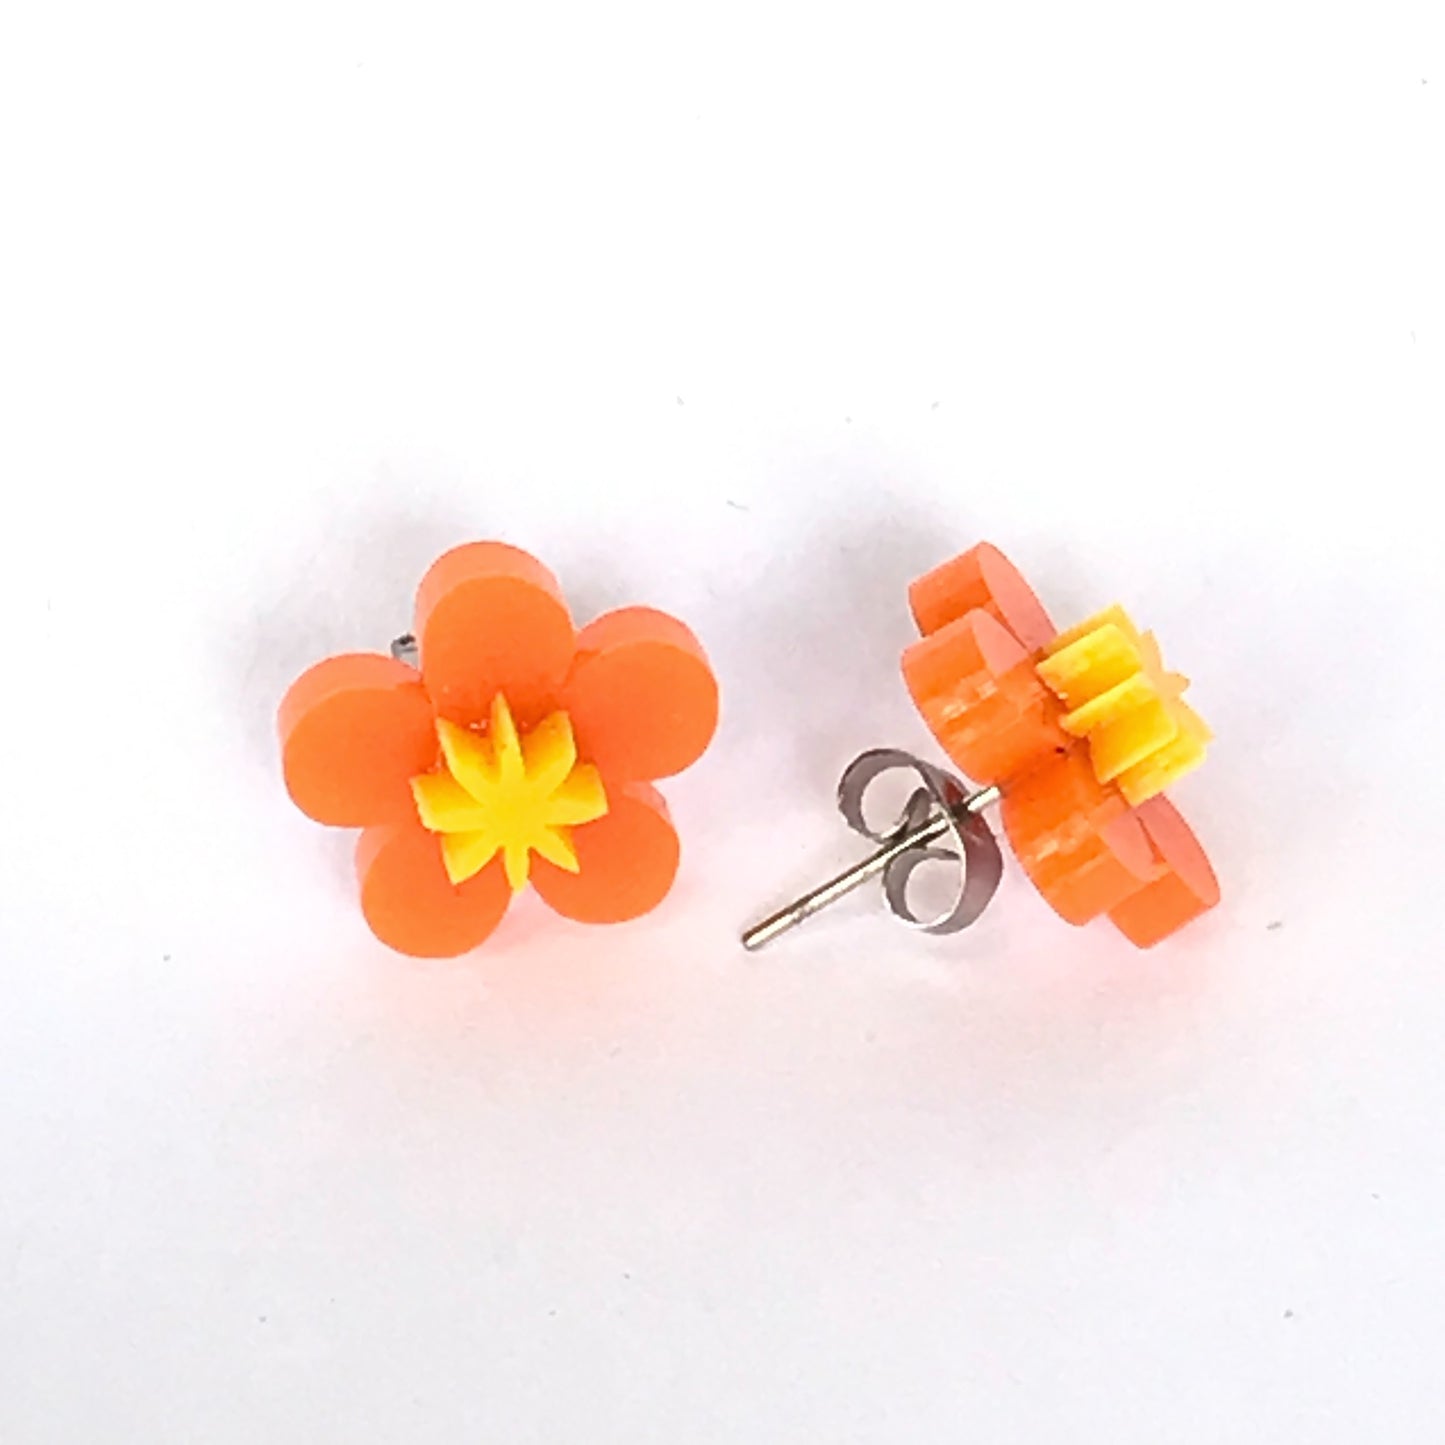 Flower laser cut acrylic earrings - daisy - orange